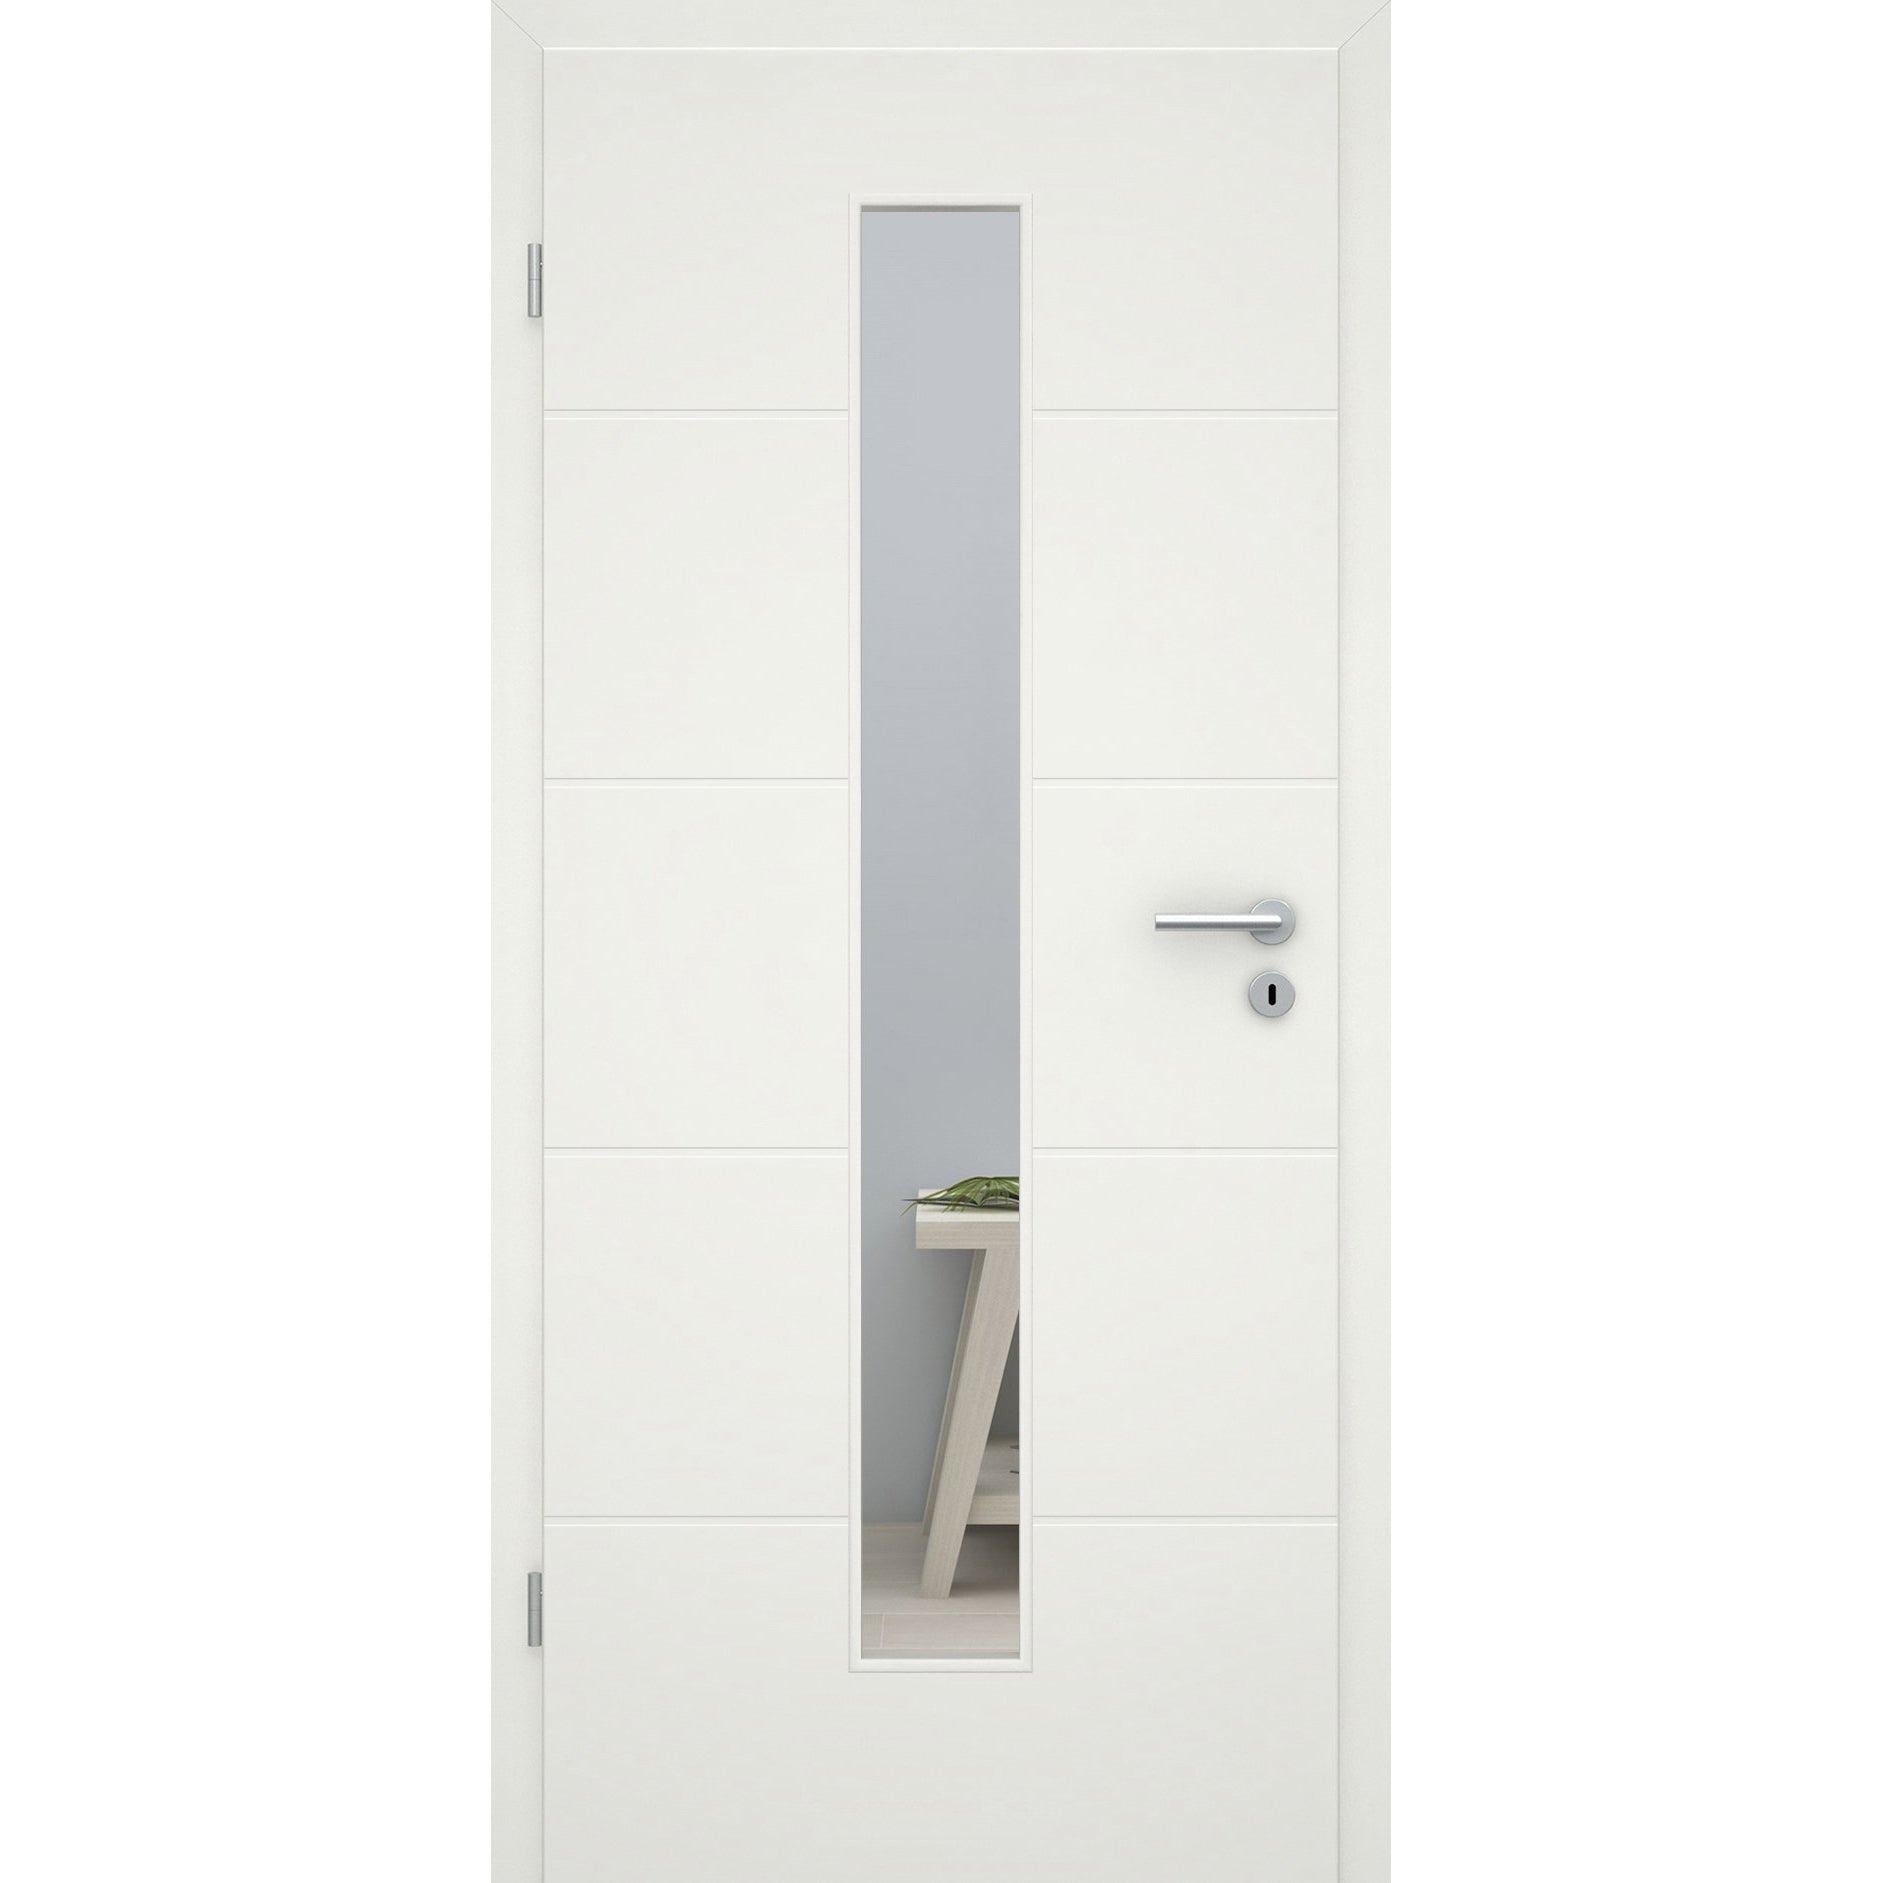 Zimmertür mit Lichtausschnitt soft-weiß 4 Rillen Eckkante - Modell Designtür Q41LAM